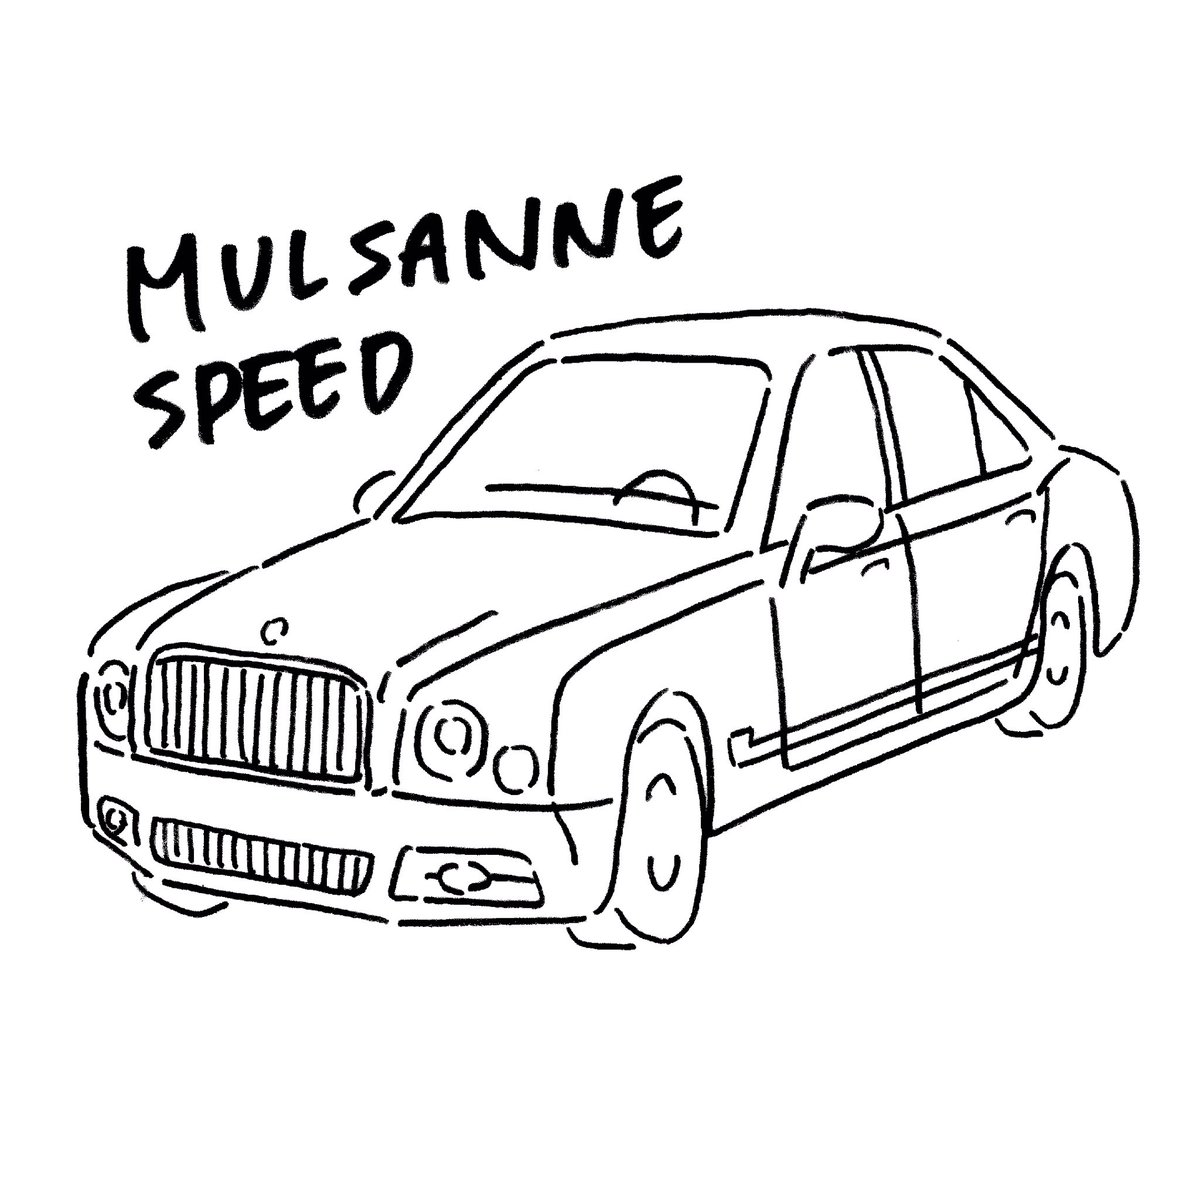 ট ইট র カリノとチカ 高級車を描いたんだ 見てくれ ついでに Rtで私を有名にしてください Mulsanne Mulsannespeed Car くるま 車 かわいい かわいい車 Illust イラスト 手描きイラスト 絵描きさんとつながりたい 絵師さんと繋がりたい